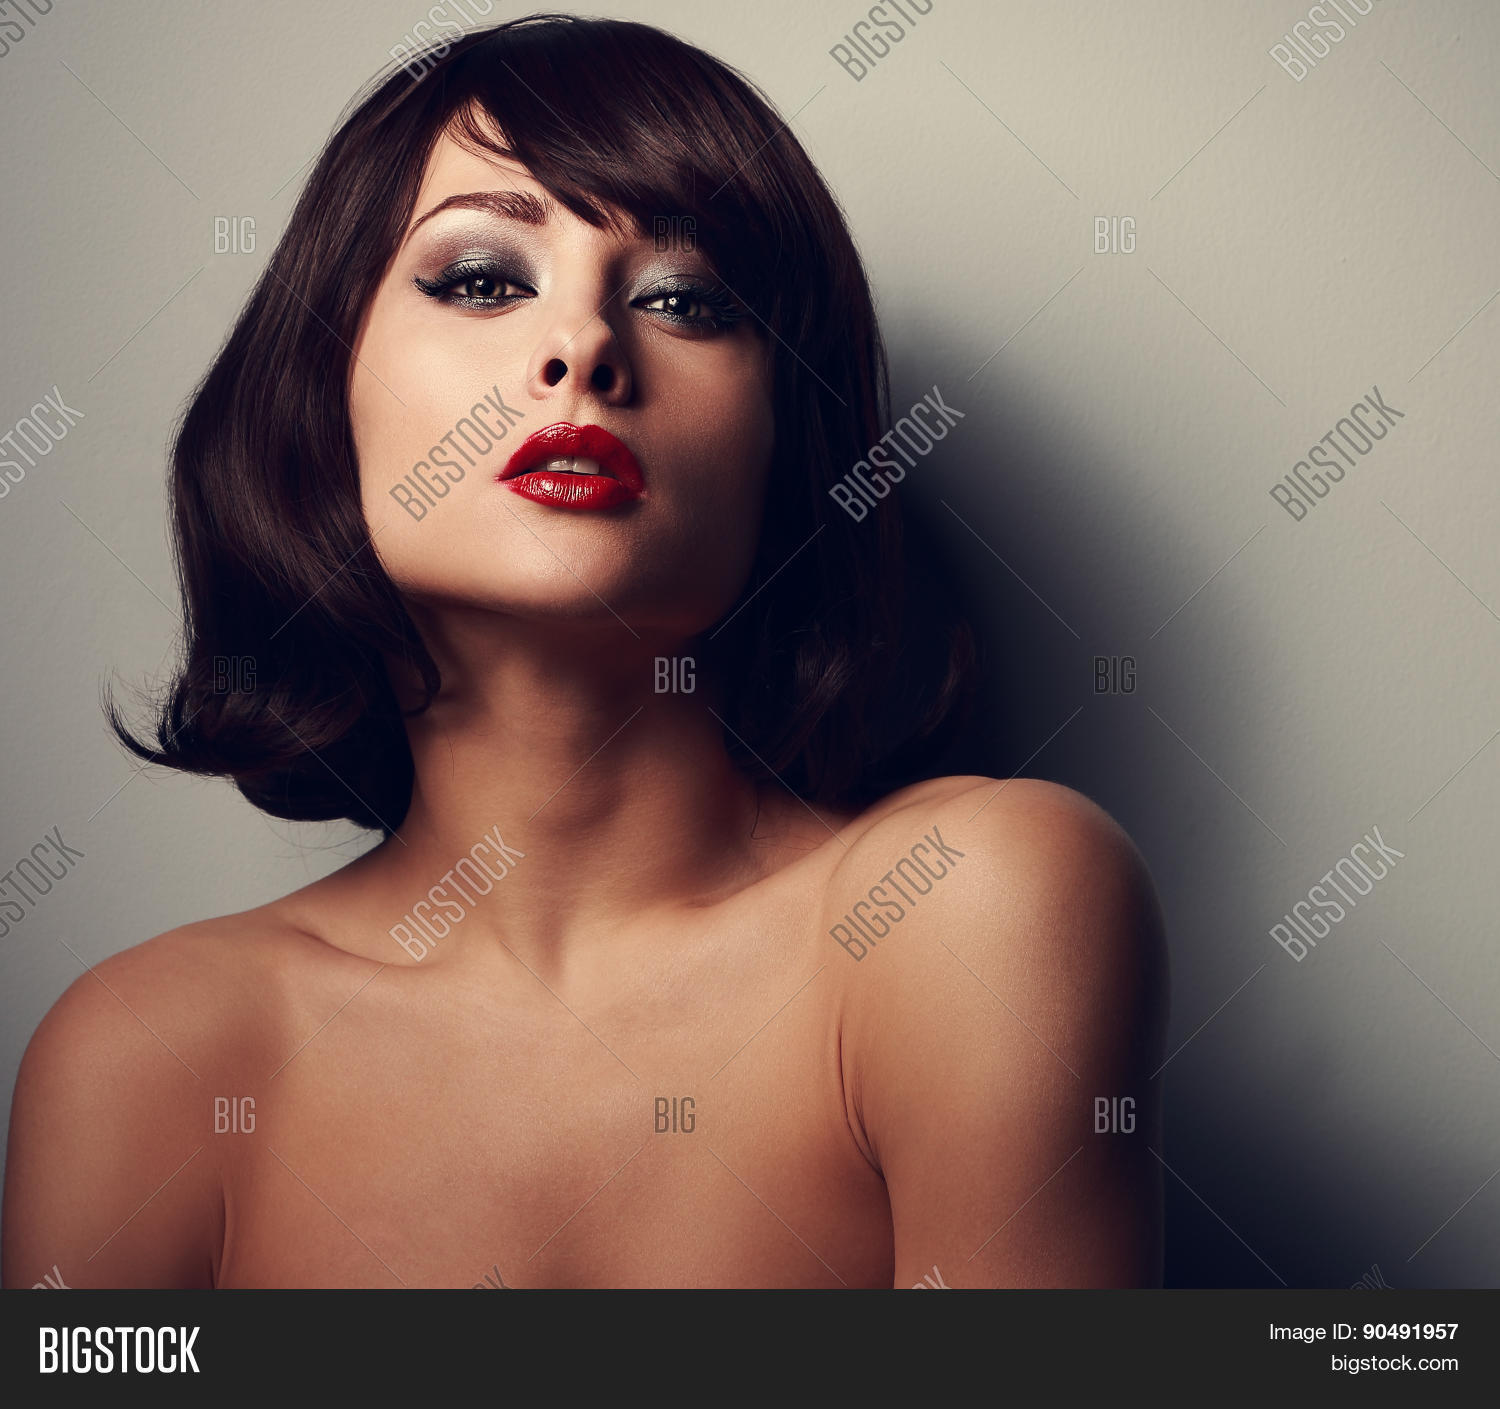 Woman black lips photo